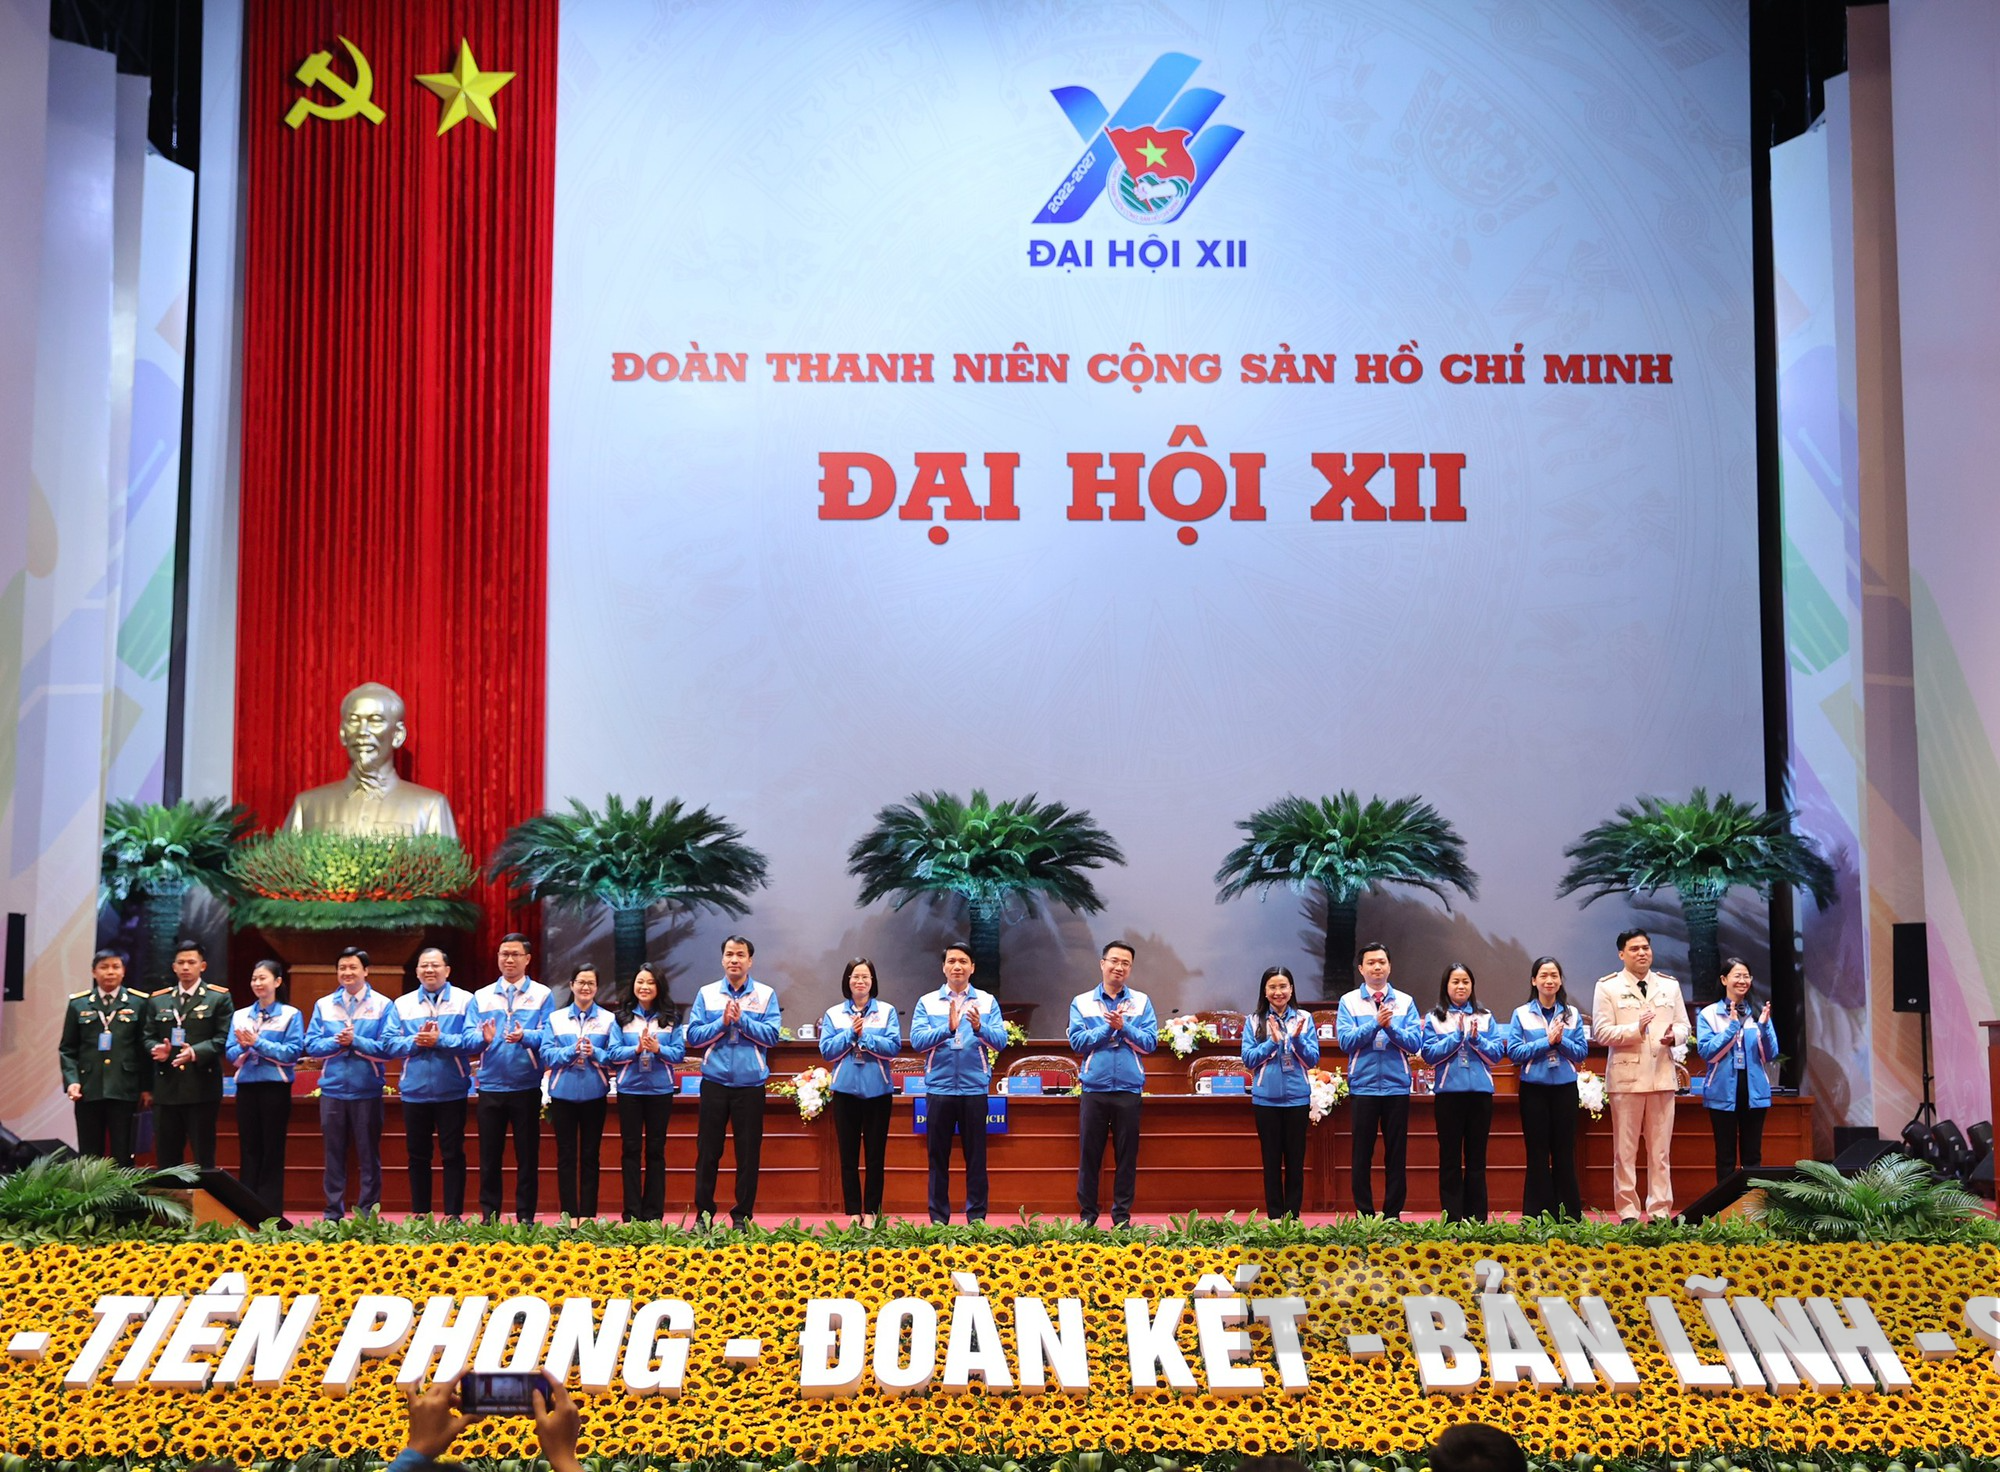 Hình ảnh khai mạc Đại hội đại biểu toàn quốc Đoàn TNCS Hồ Chí Minh lần thứ XII - Ảnh 3.